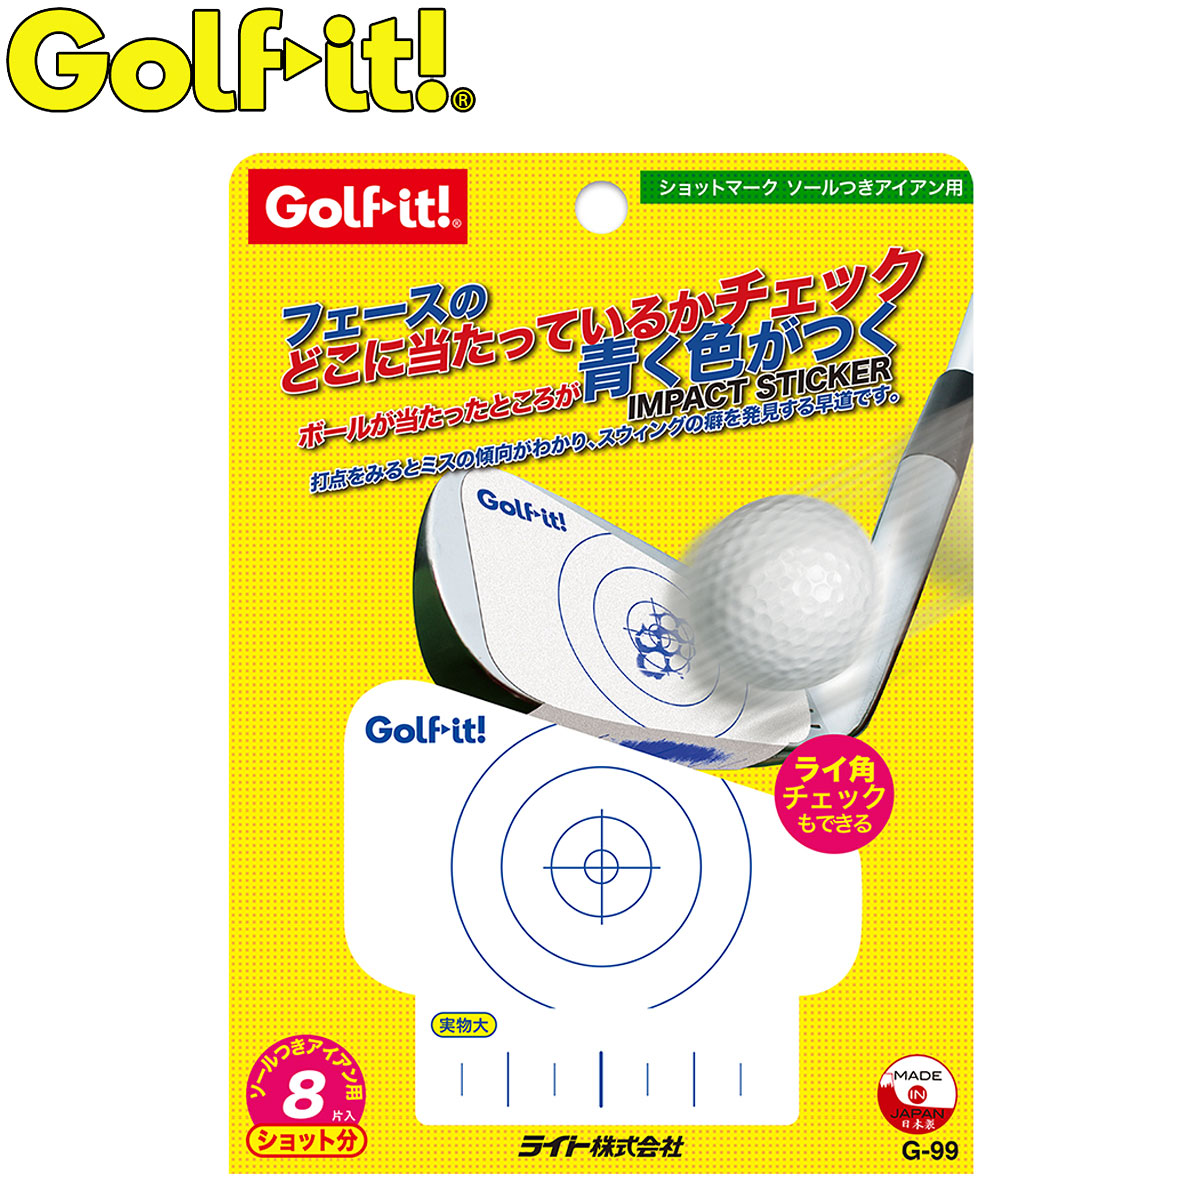 打点が発色するショット診断用ラベル Golfit 流行 クリアランスsale 期間限定 ゴルフイット LiTE ライト 日本正規品 アイアン用 ショットマーク ソール付き G-99 ゴルフスイング練習用品